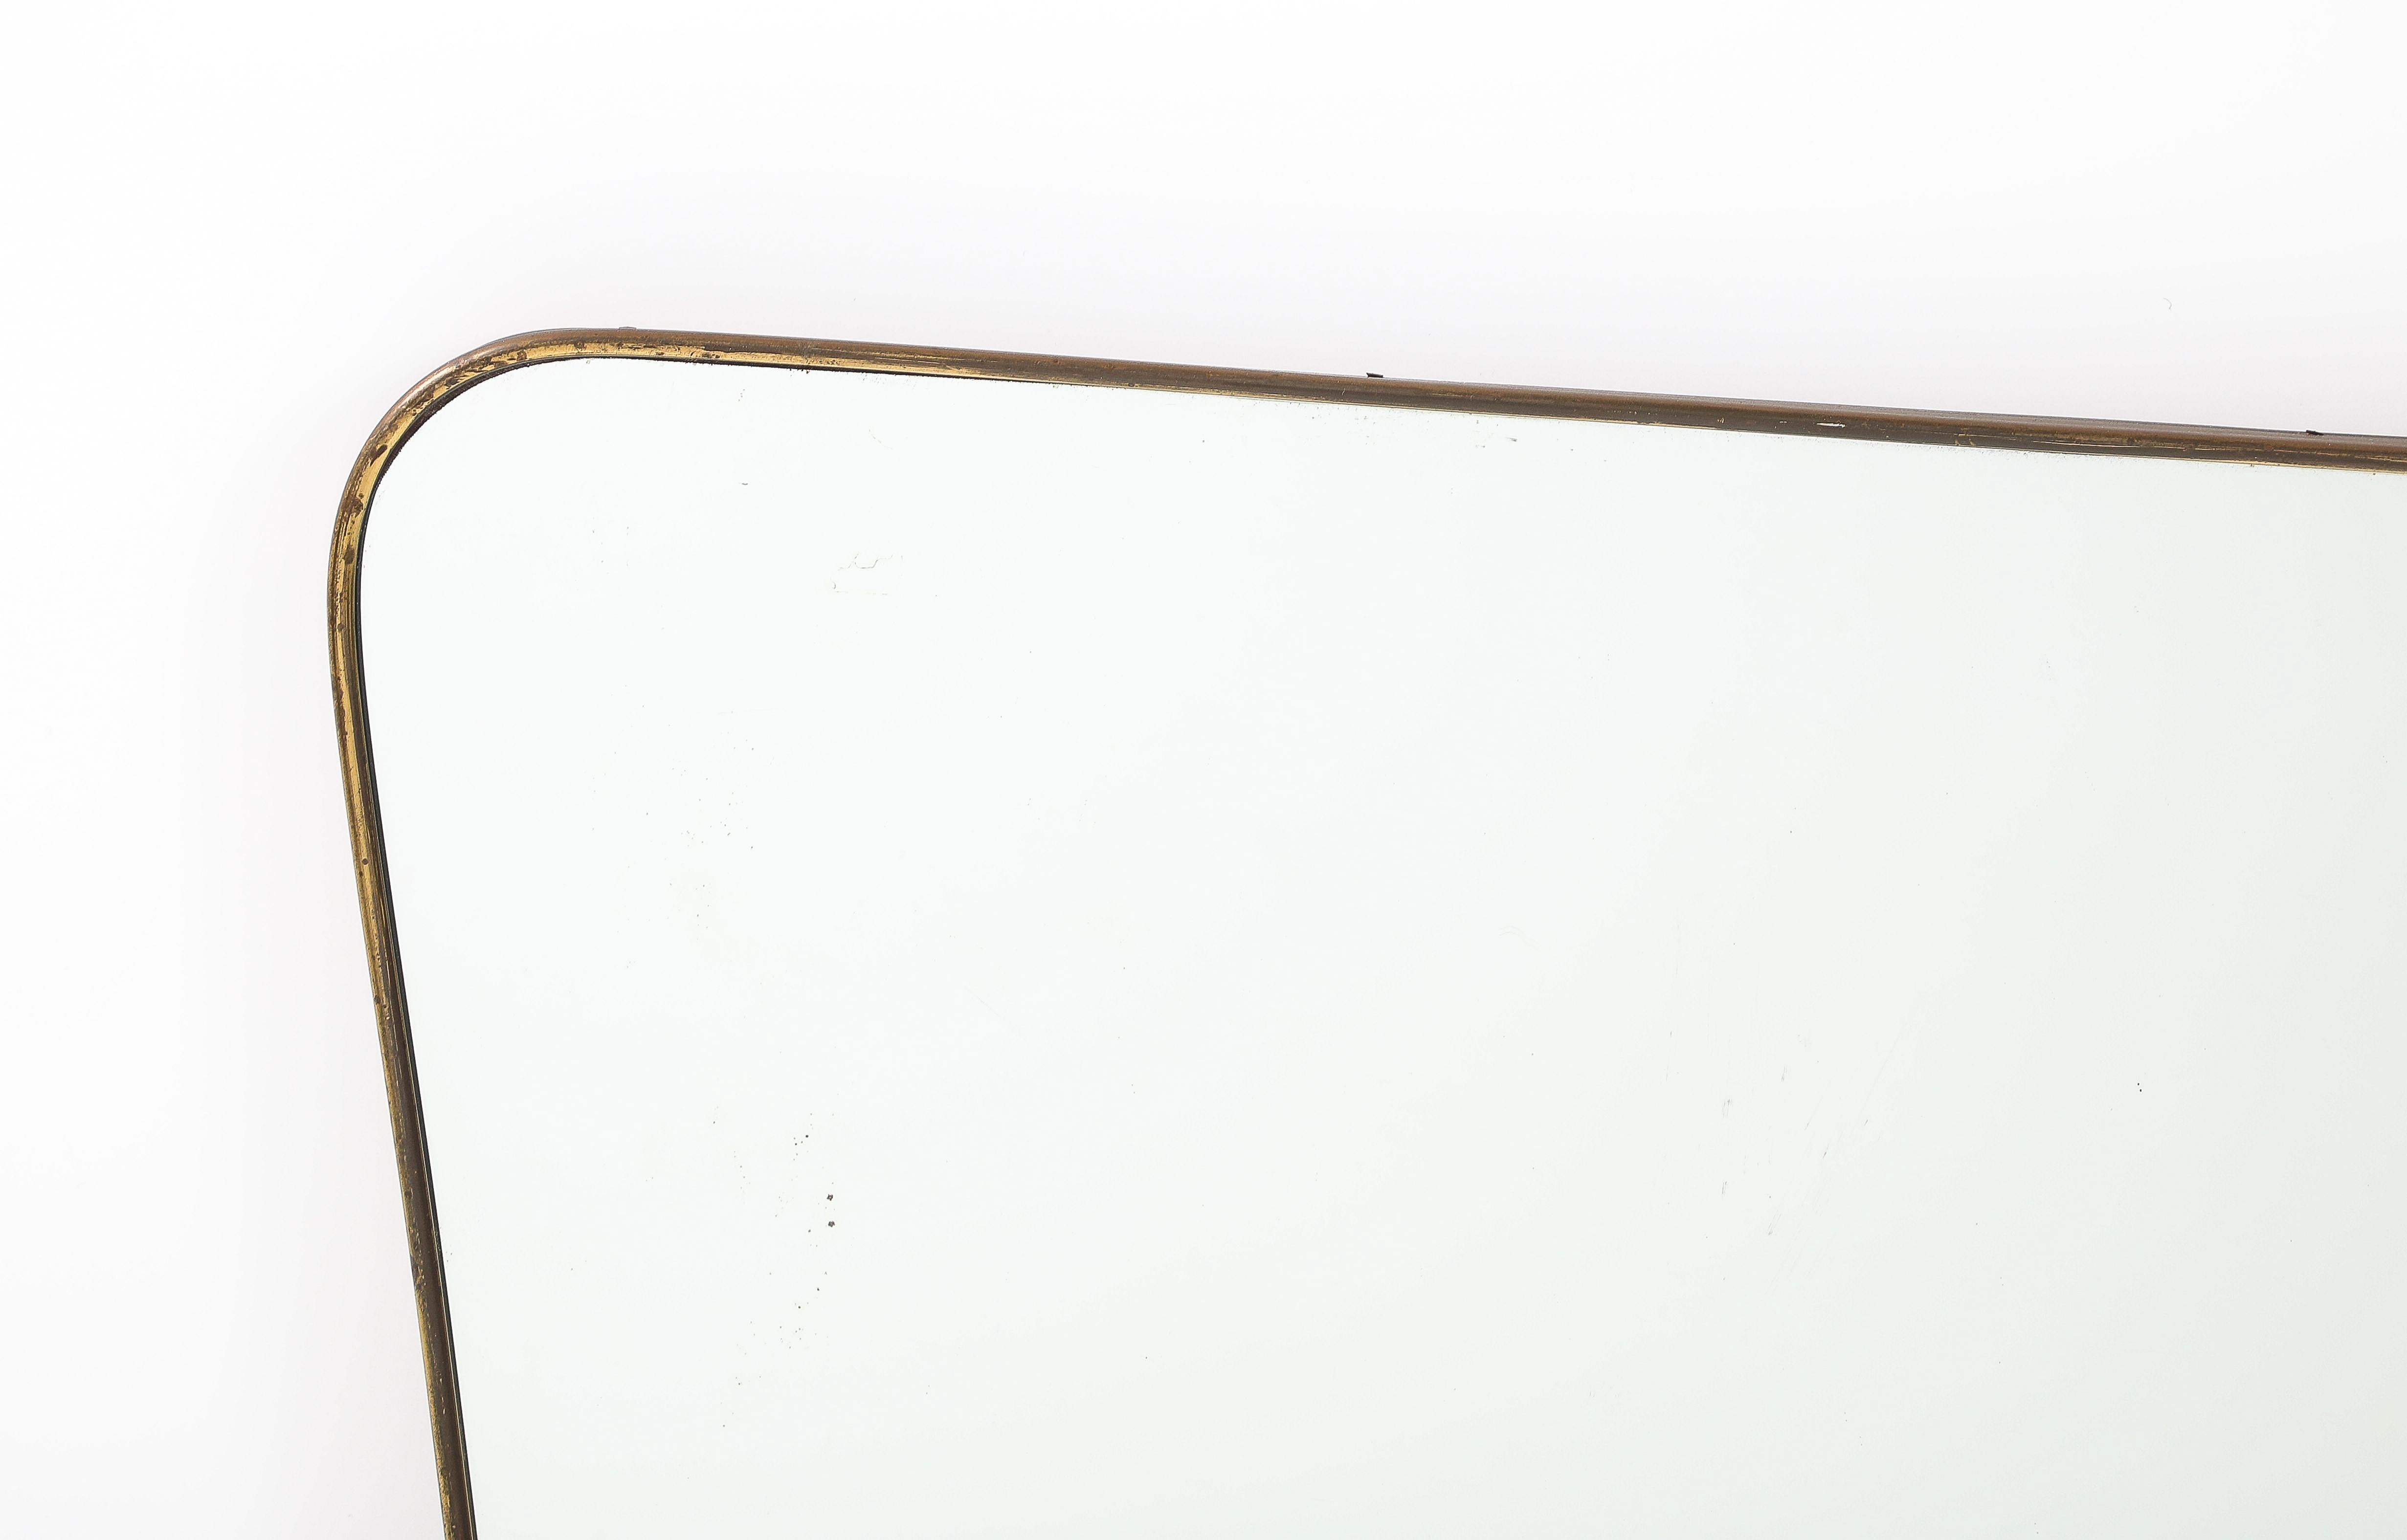 Miroir horizontal en laiton de style moderniste italien des années 1950, dans le style de Gio Ponti.  Ce miroir exquis a un cadre en laiton légèrement incurvé avec des coins arrondis et des côtés légèrement effilés. Il y a un élément décoratif